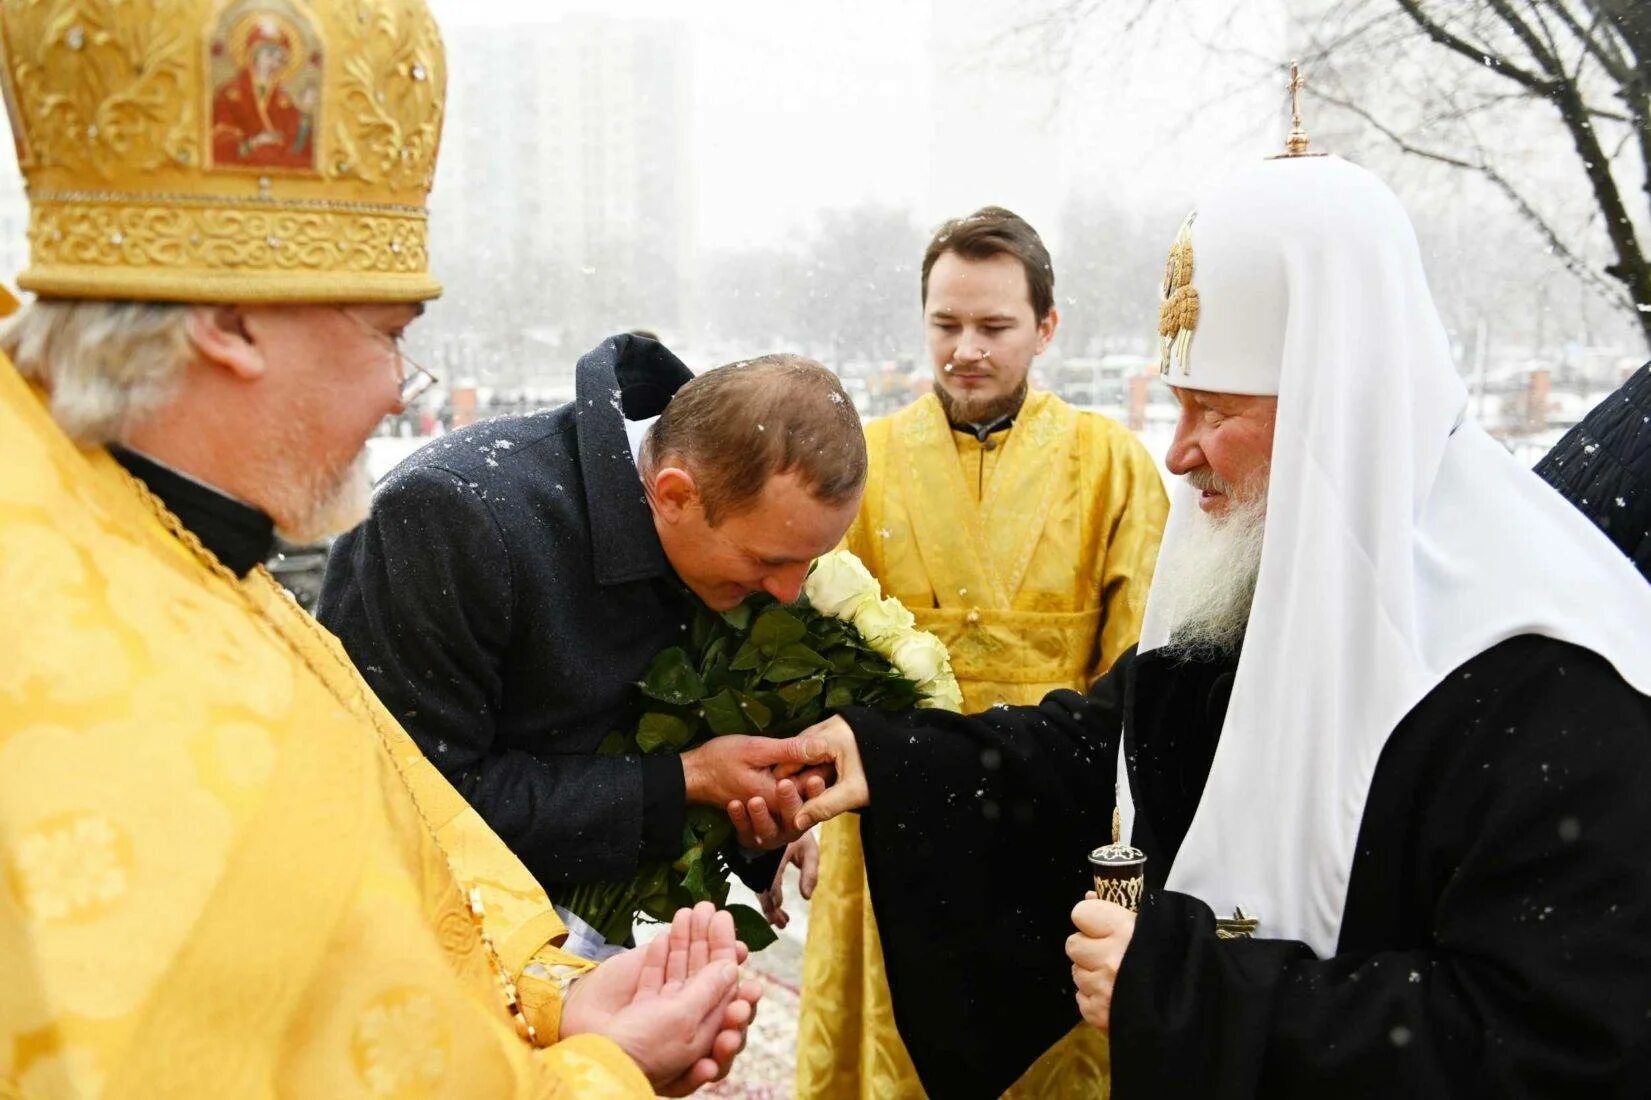 Целование креста. Целование руки священника. Патриарх целует руку. Целование руки Патриарха.